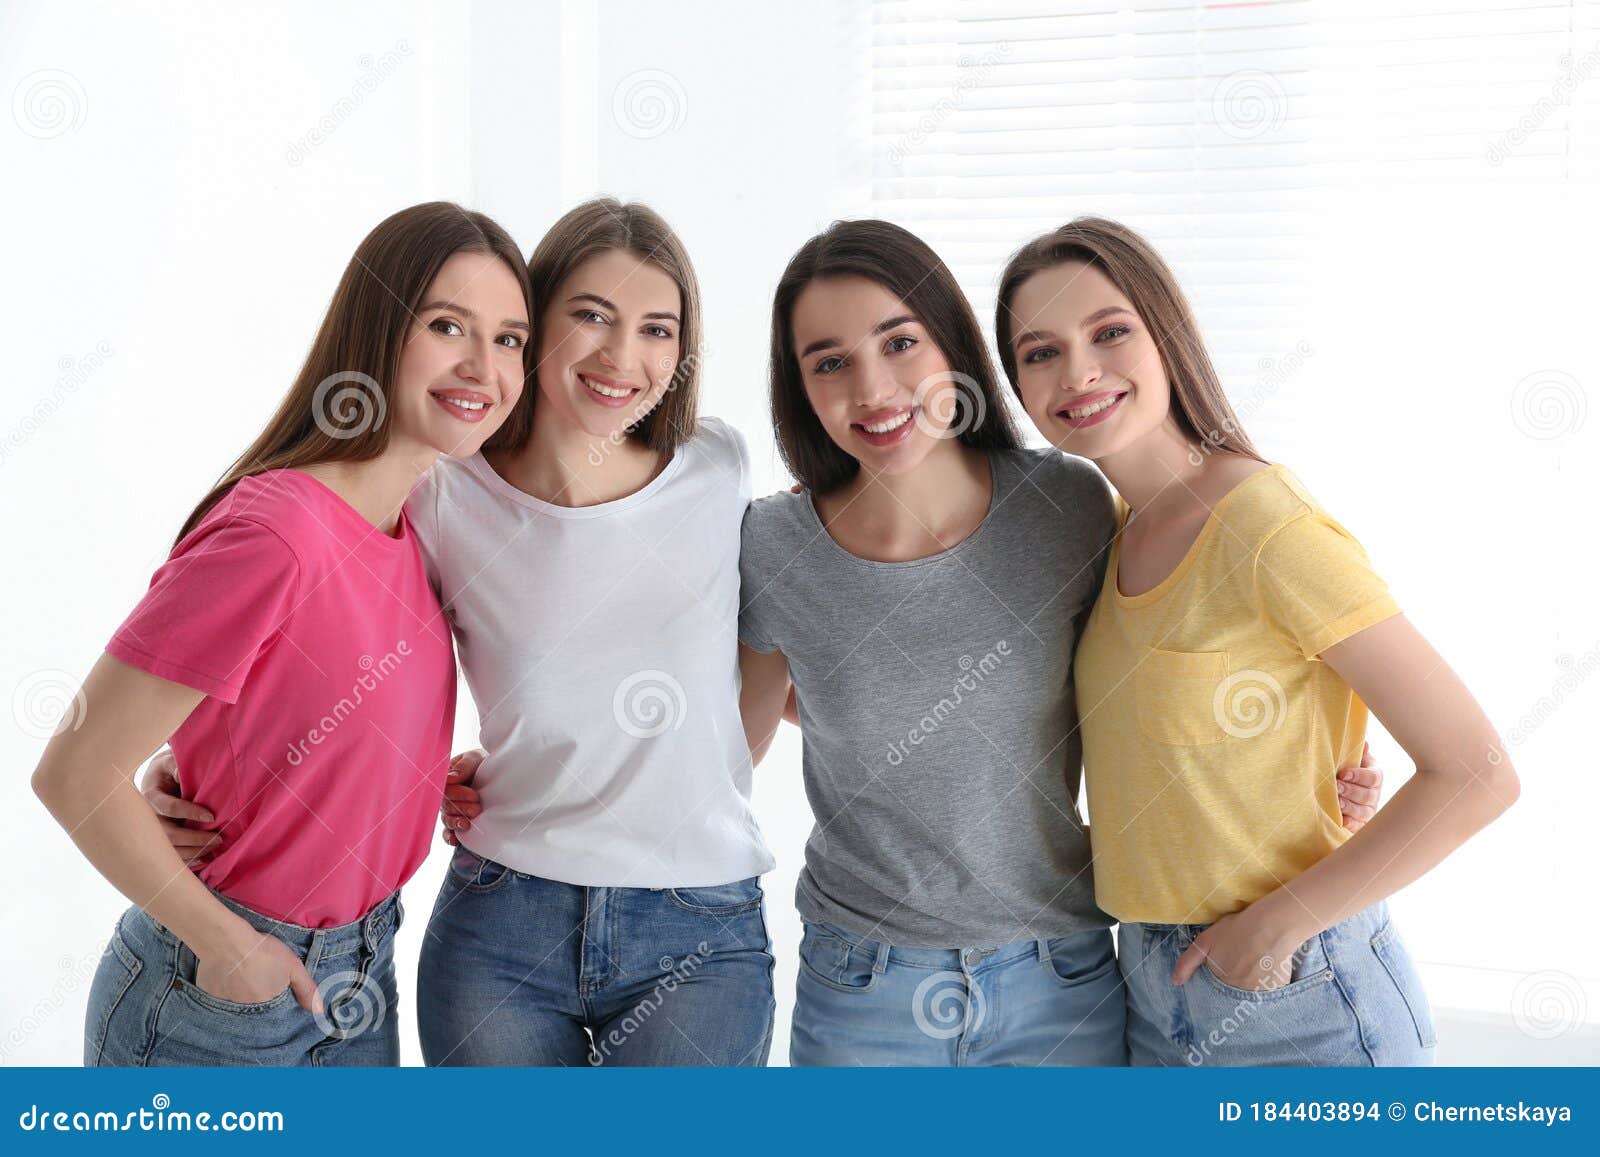 Chicas En Jeans Y Camisetas Coloridas. De La Mujer Foto de archivo - Imagen de celebre, 184403894